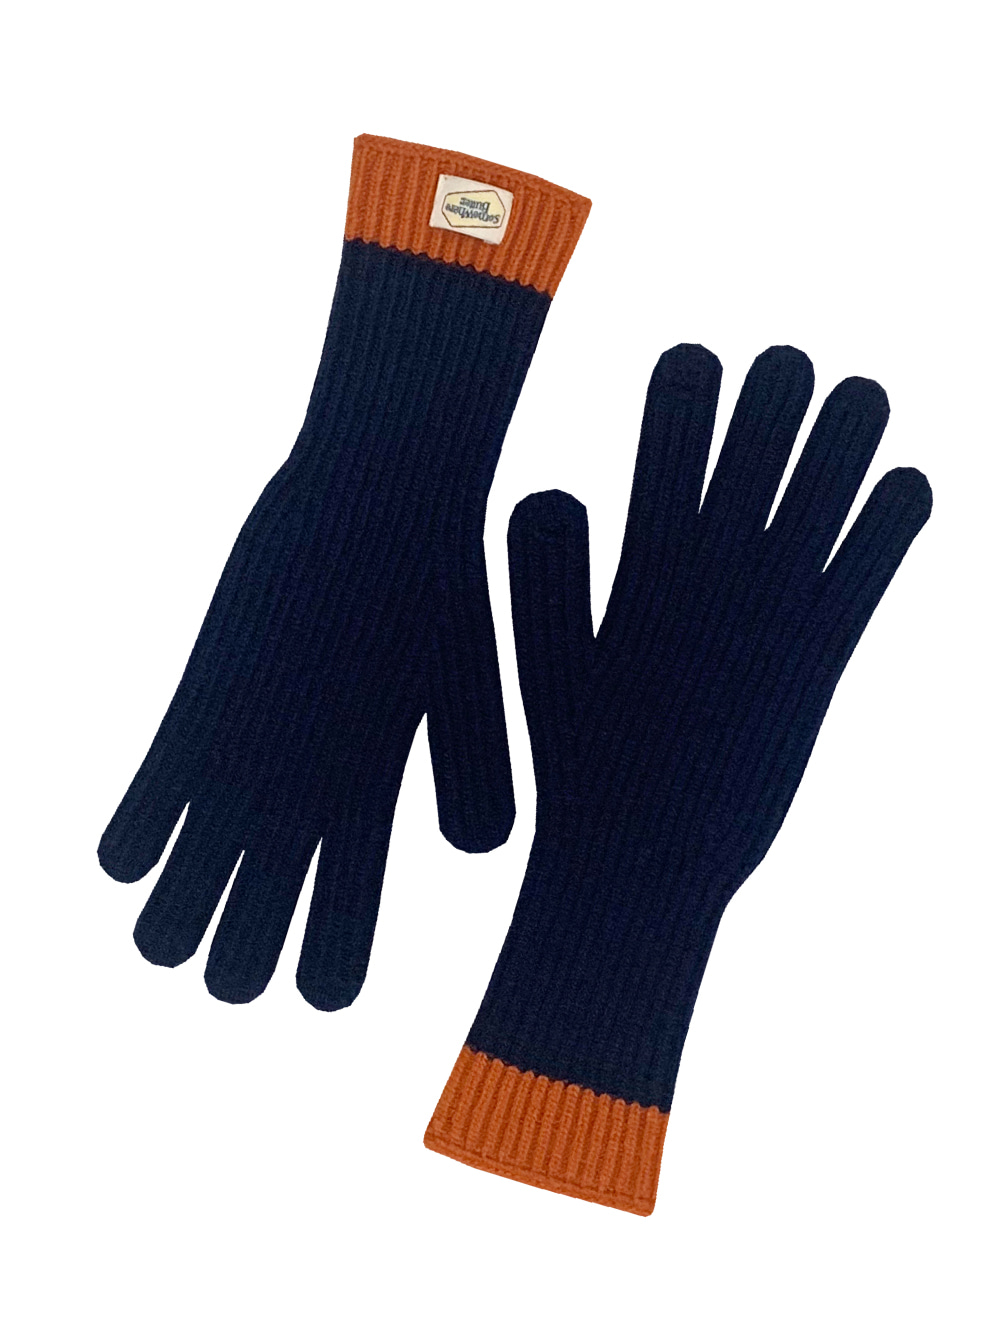 butter wool gloves - dark navy